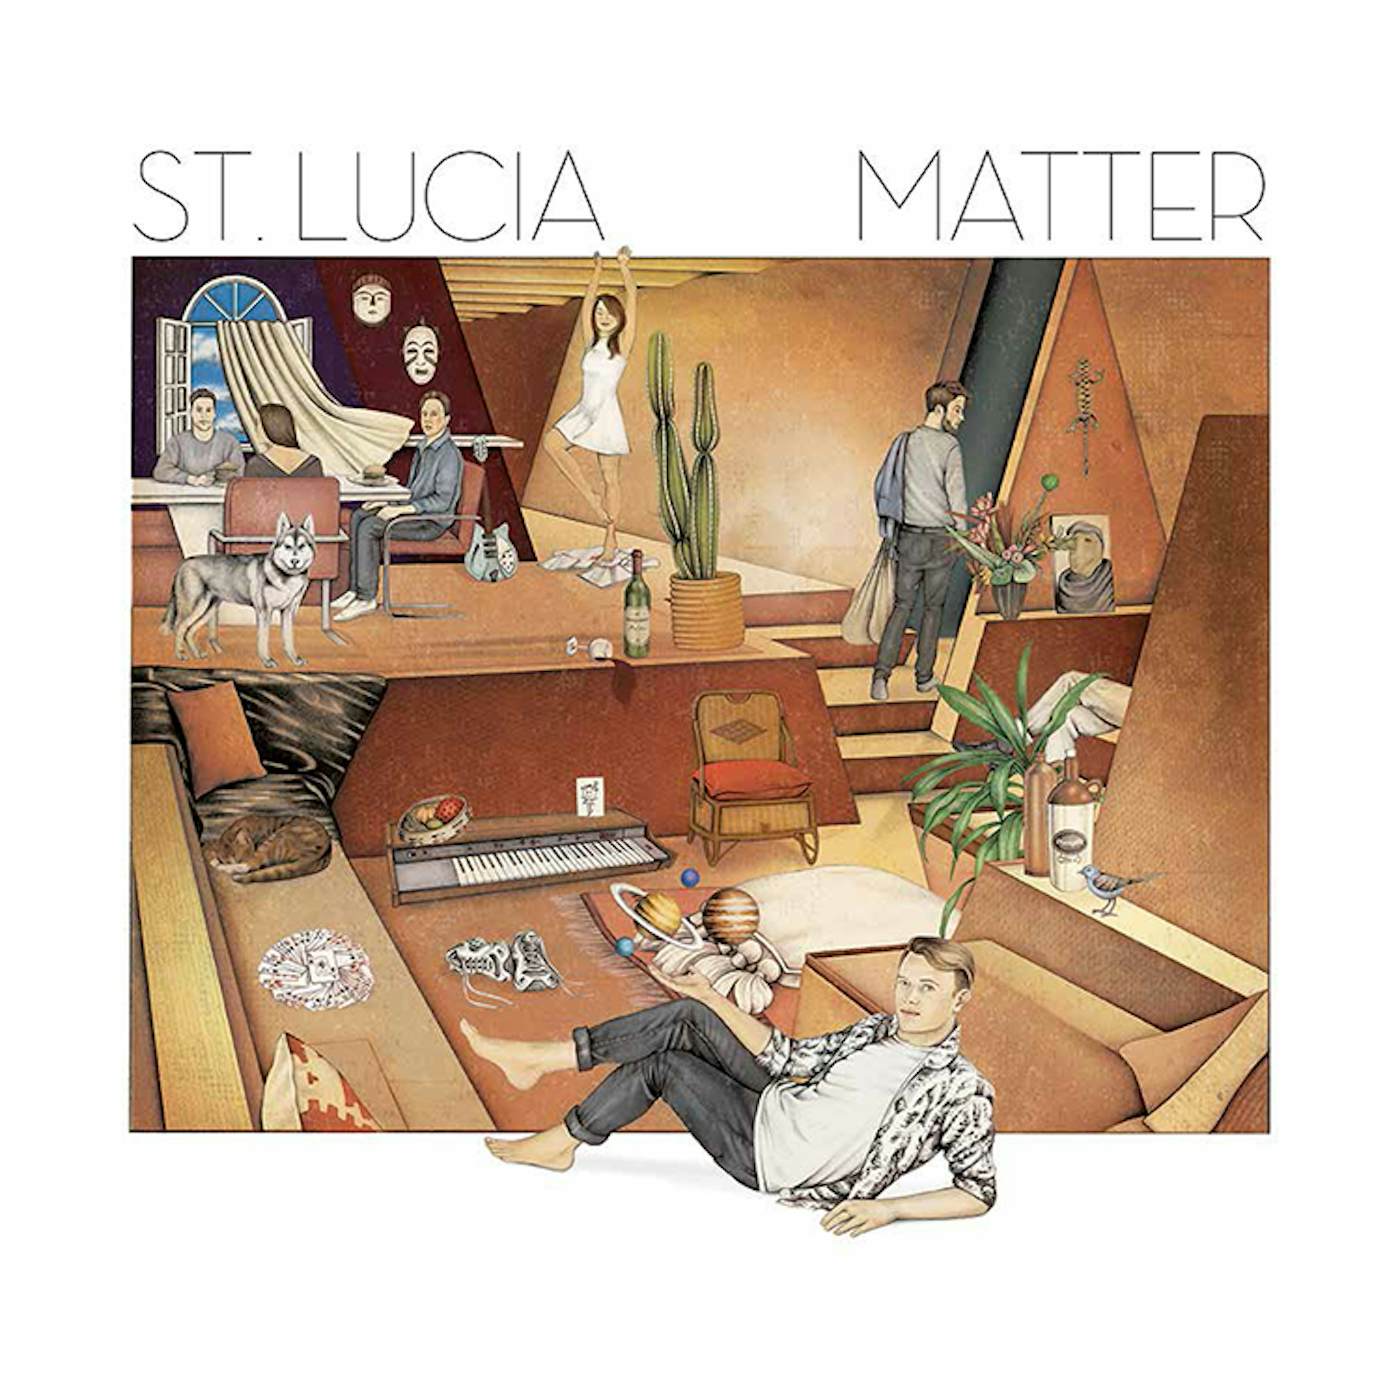 St. Lucia Matter Lithograph